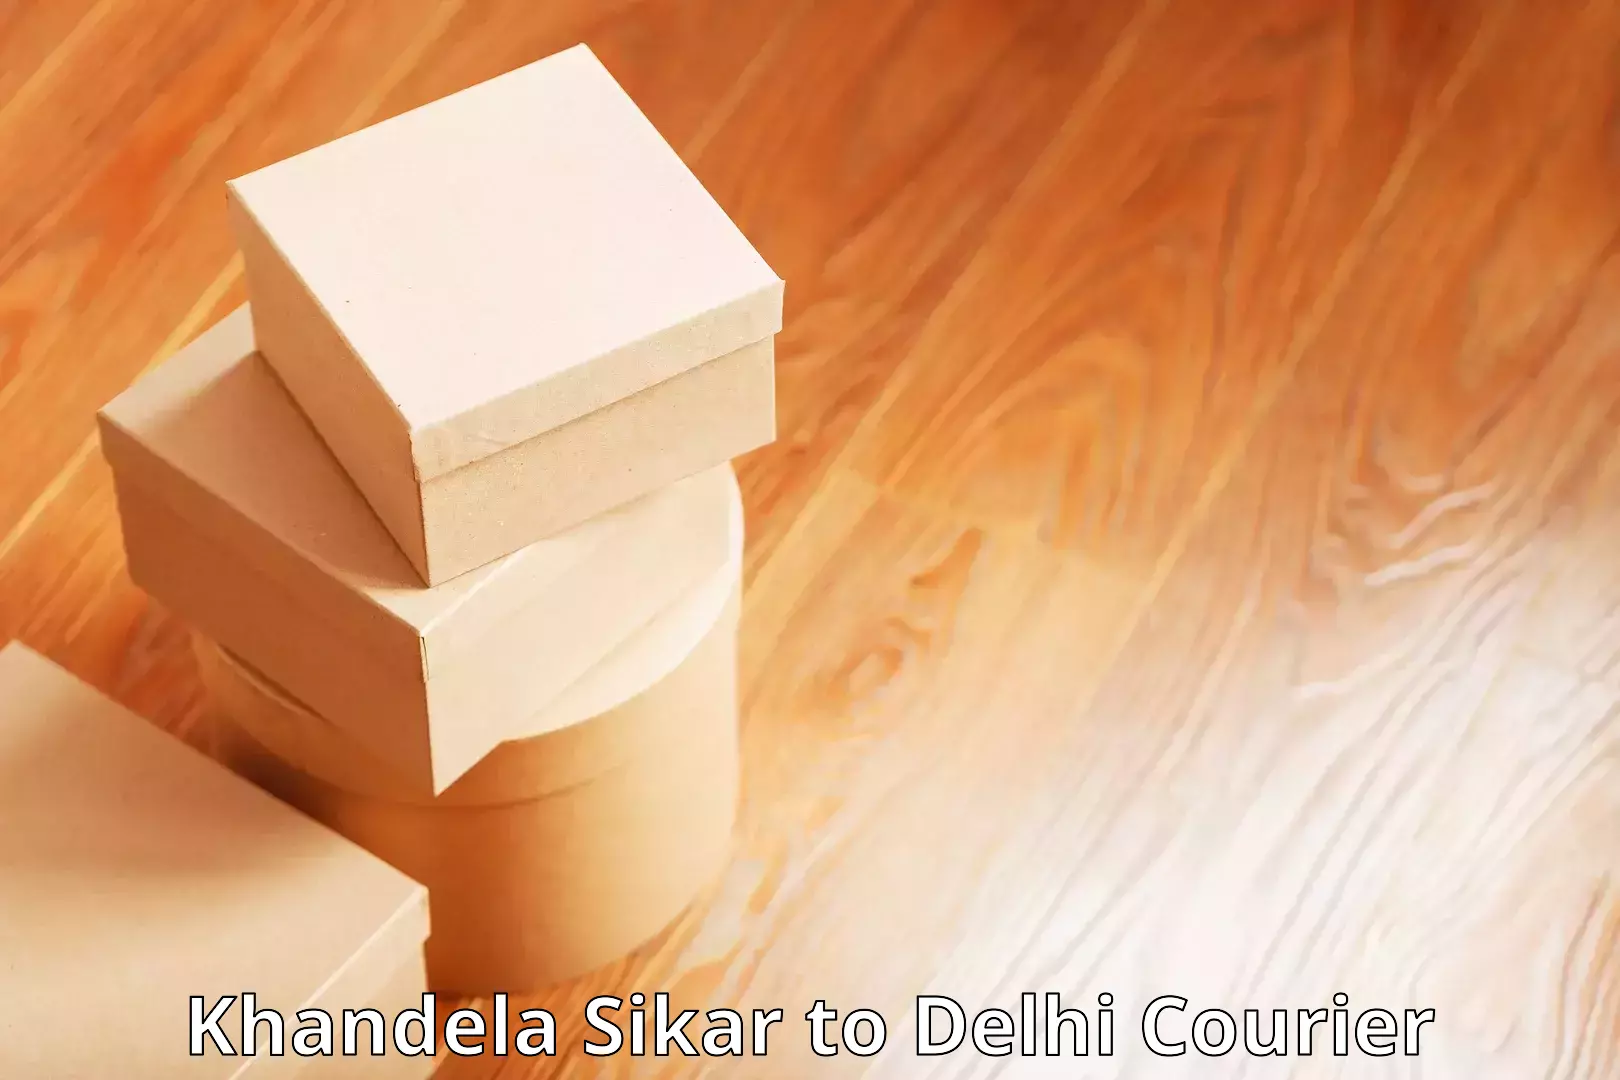 Wholesale parcel delivery Khandela Sikar to East Delhi